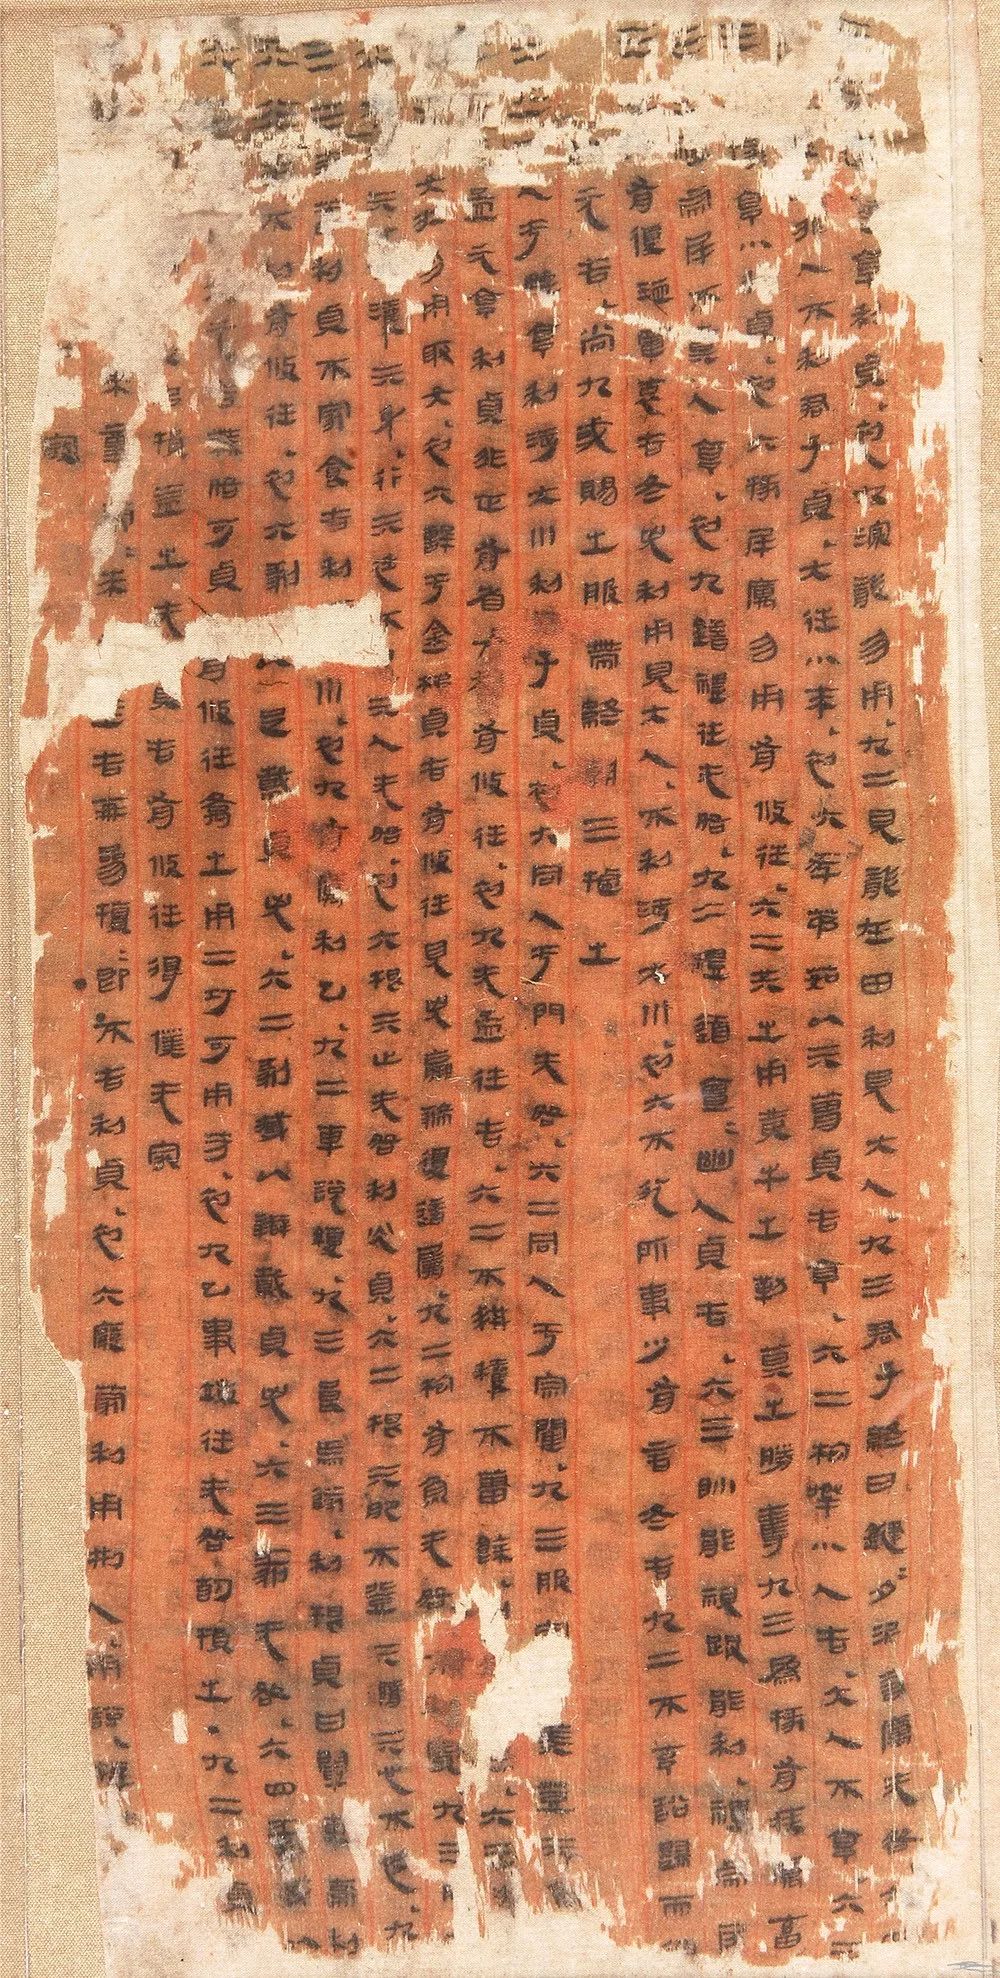 马王堆帛书:穿越千年的瑰丽